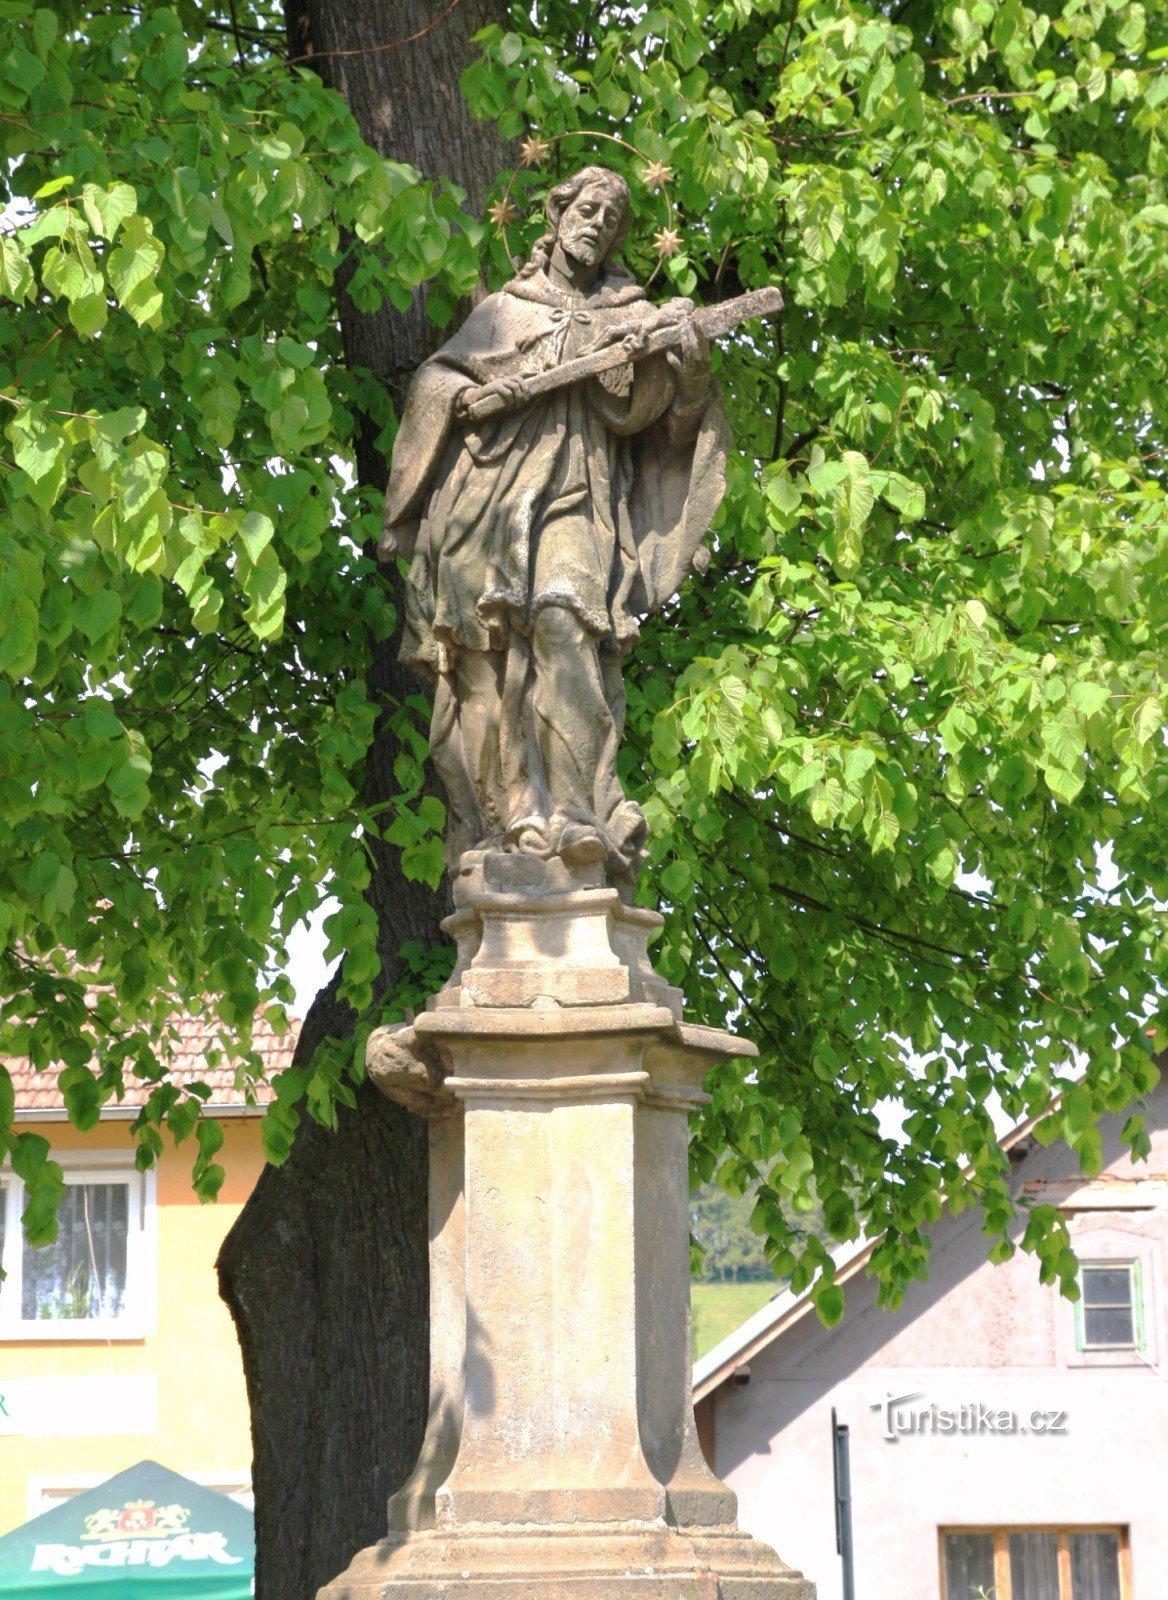 Vojnův Městec - statue of St. Jan Nepomucký on the square